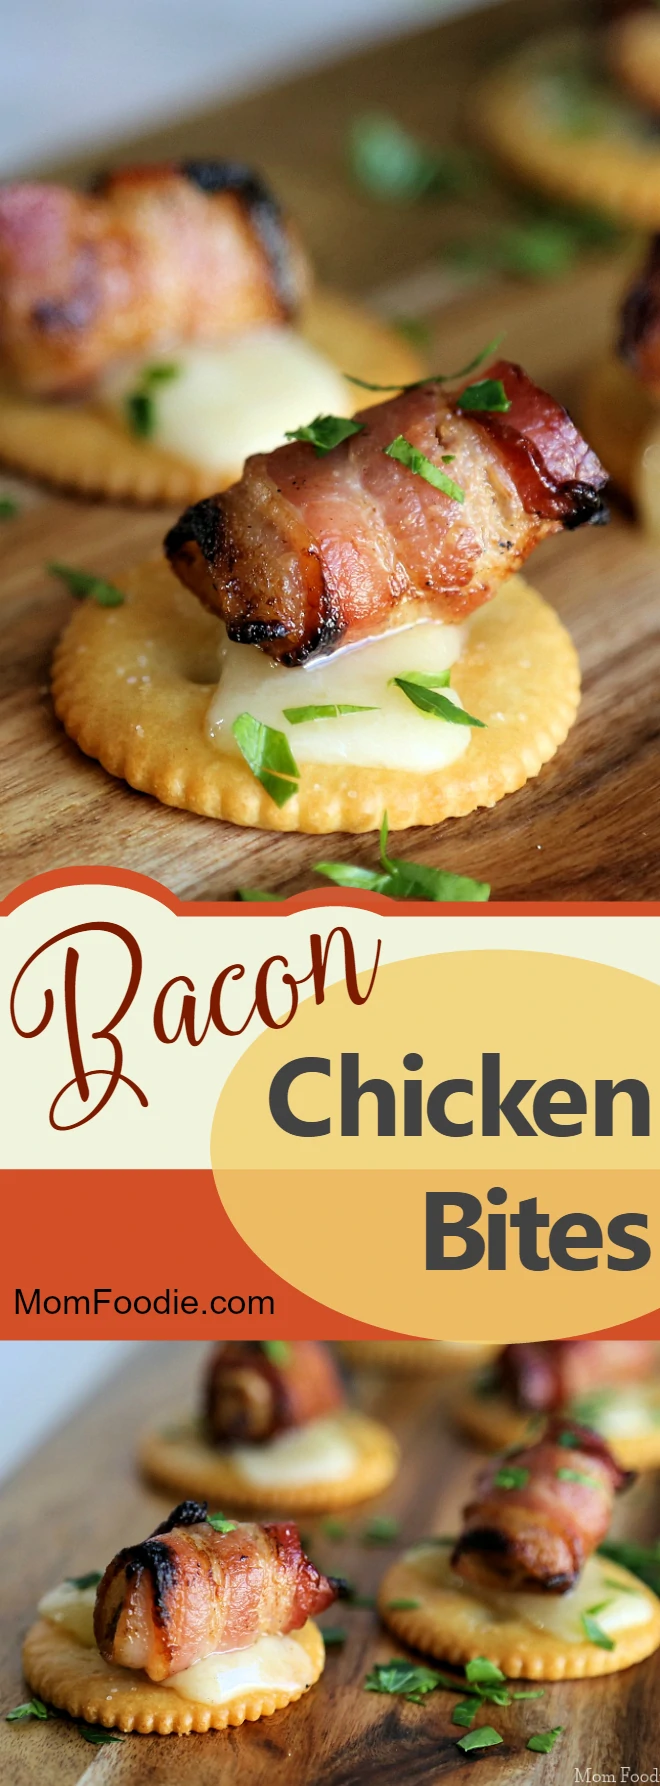 Bacon Chicken Bites